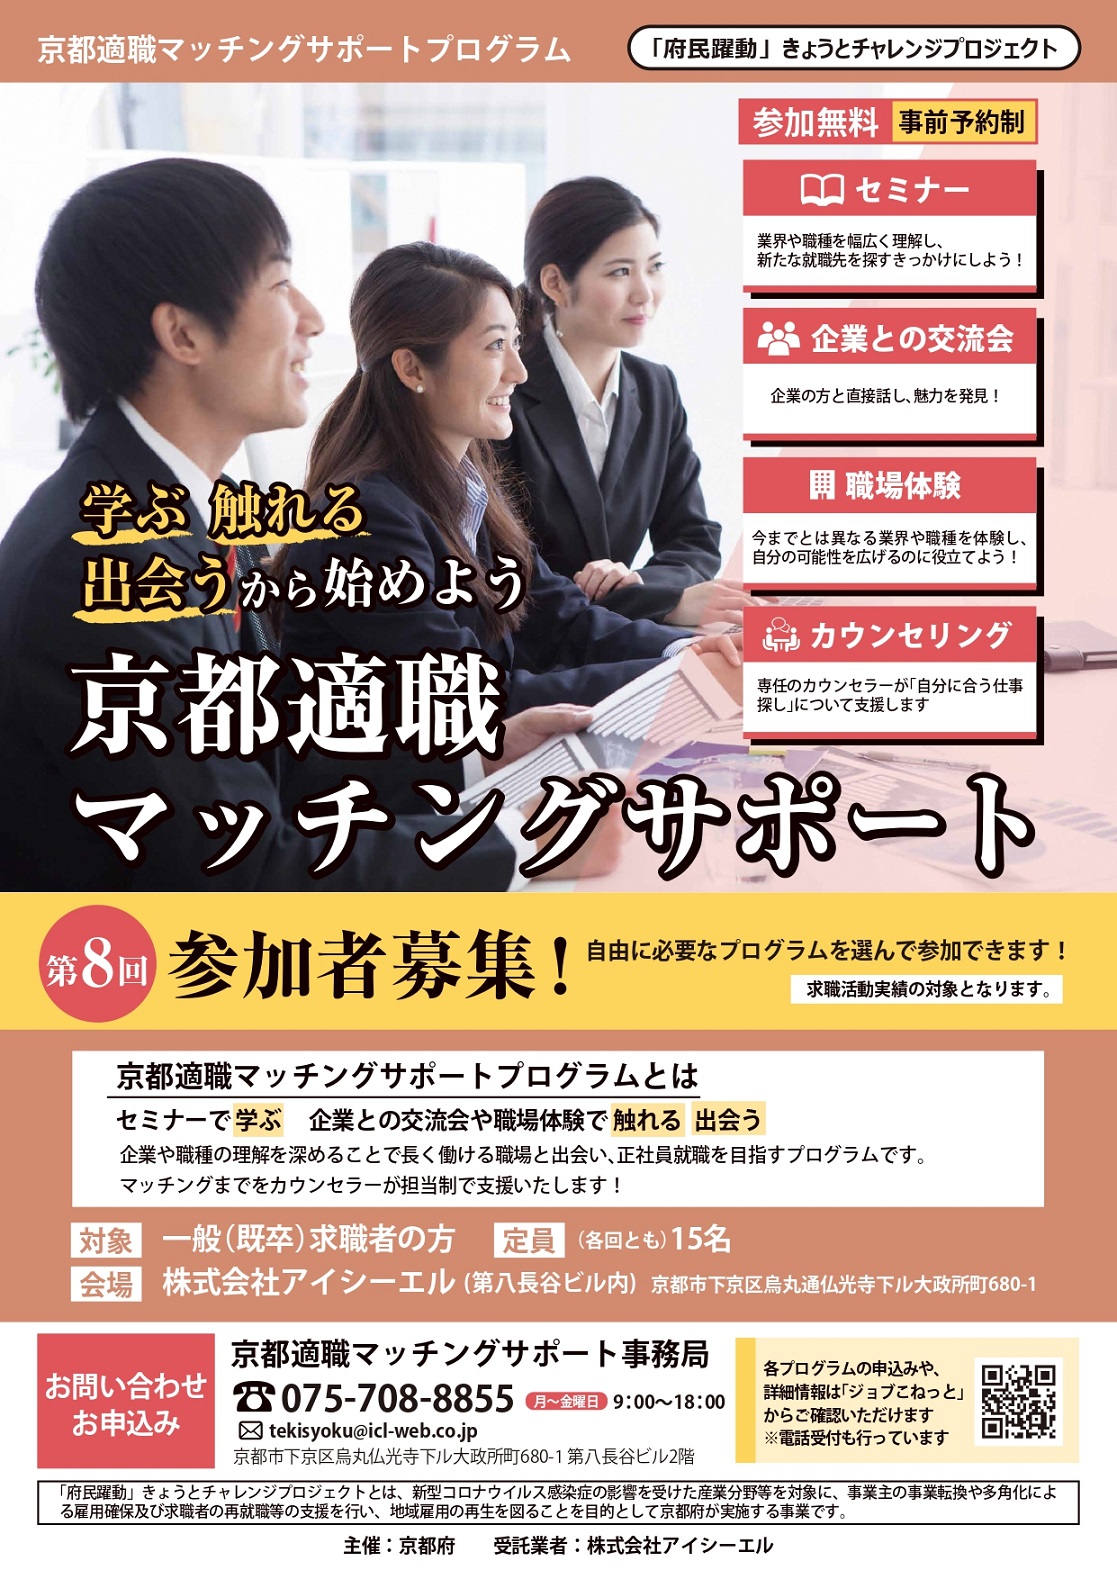 第8回「京都適職マッチングサポートプログラム」参加者募集